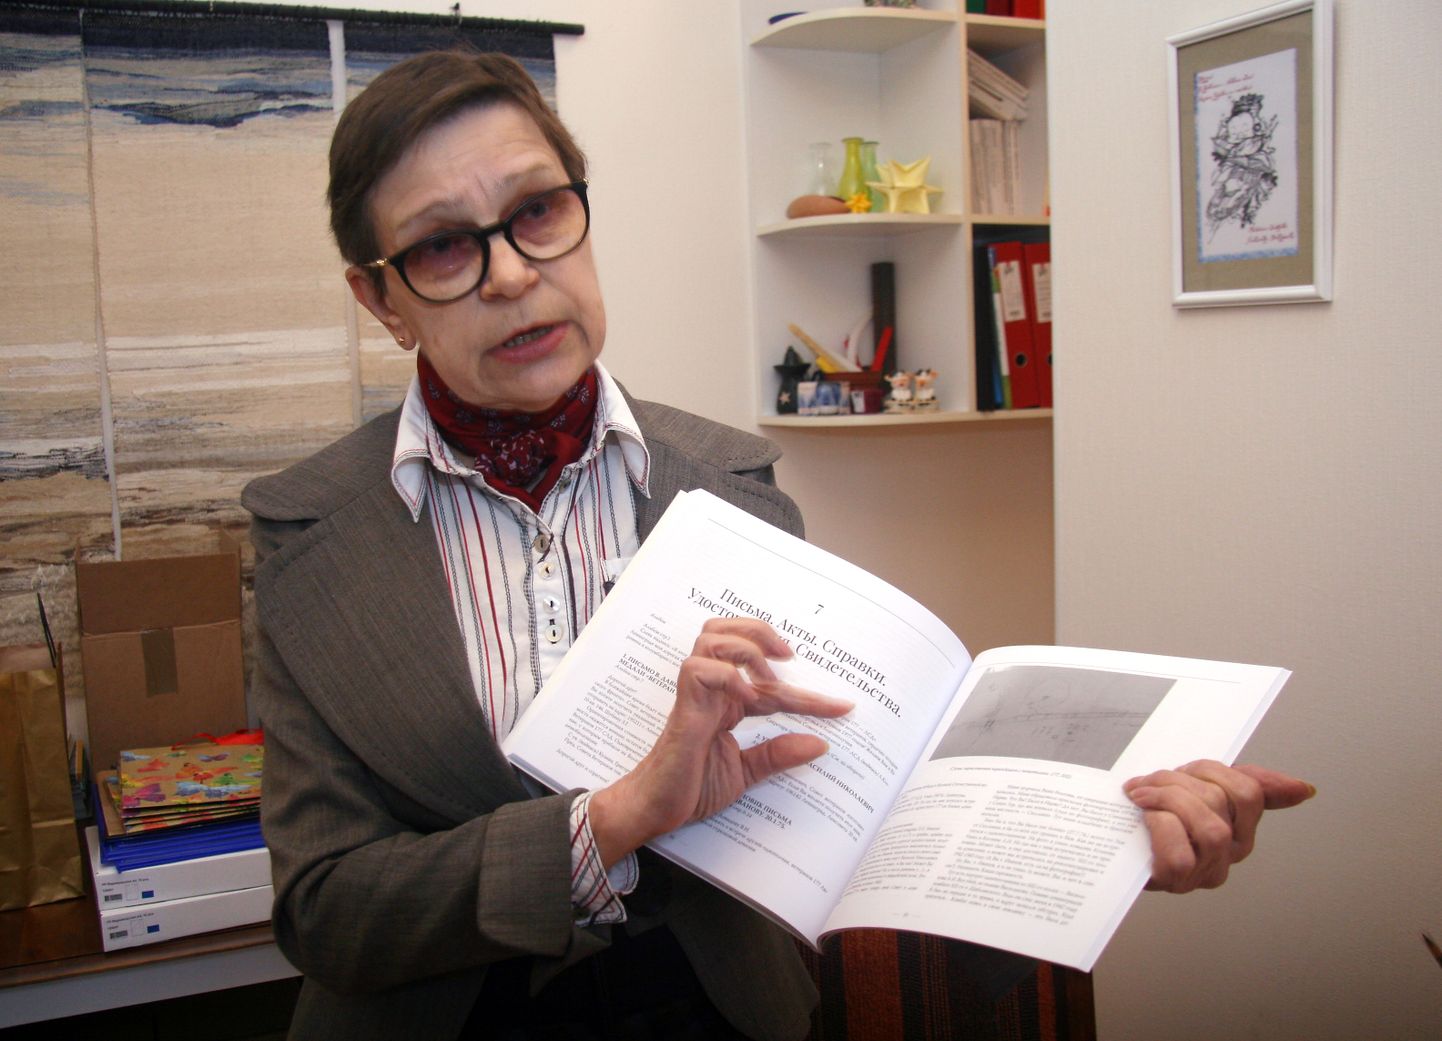 Директор Силламяэского музея Аала Гитт, представляя новое издание, замечает, что новая книга расходится среди горожан как горячие пирожки.